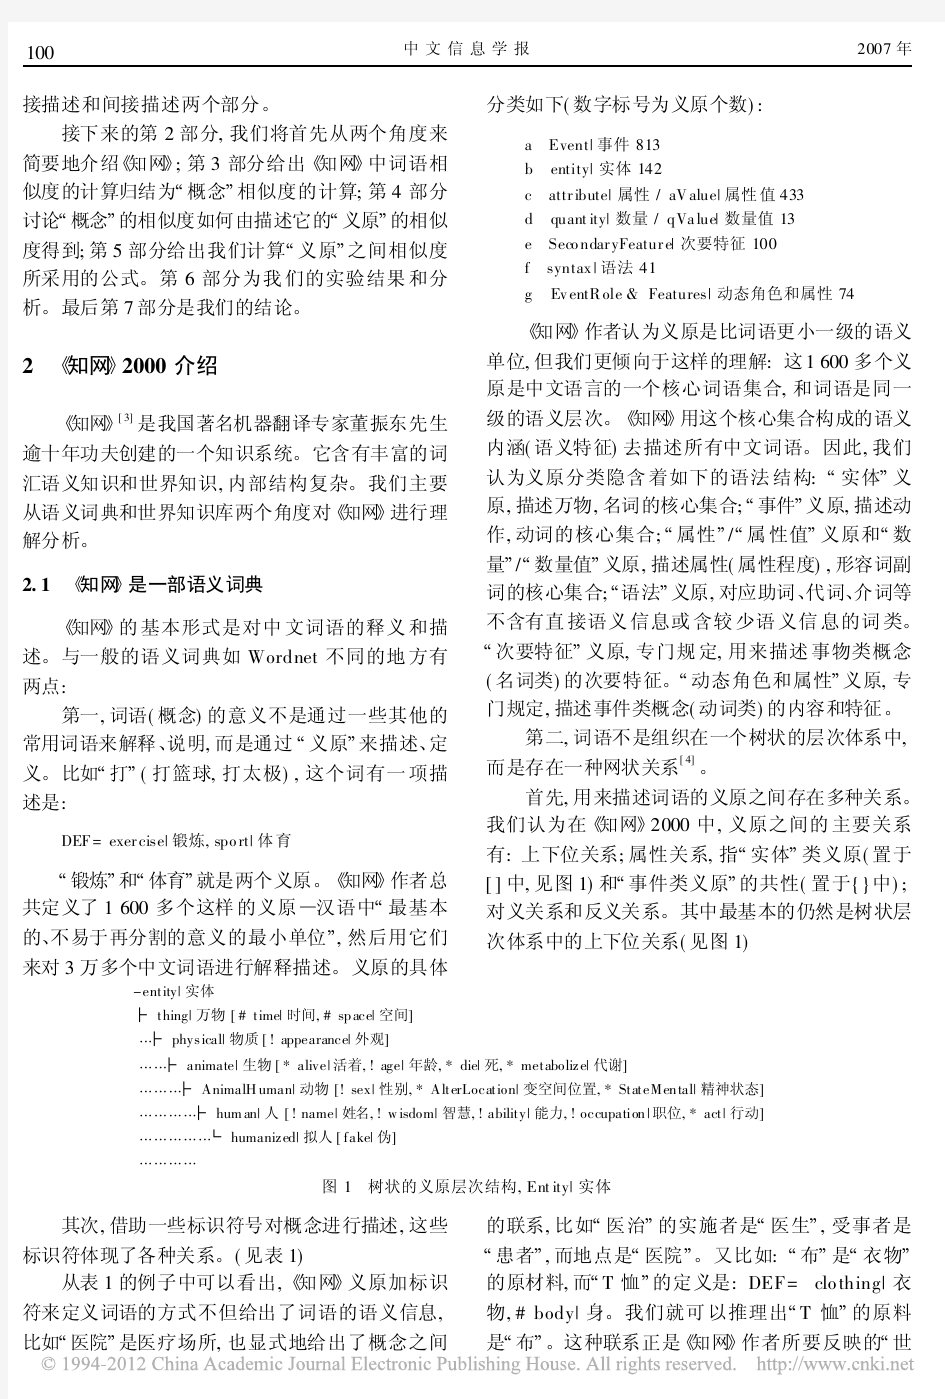 中文词语语义相似度计算_基于_知网_2000